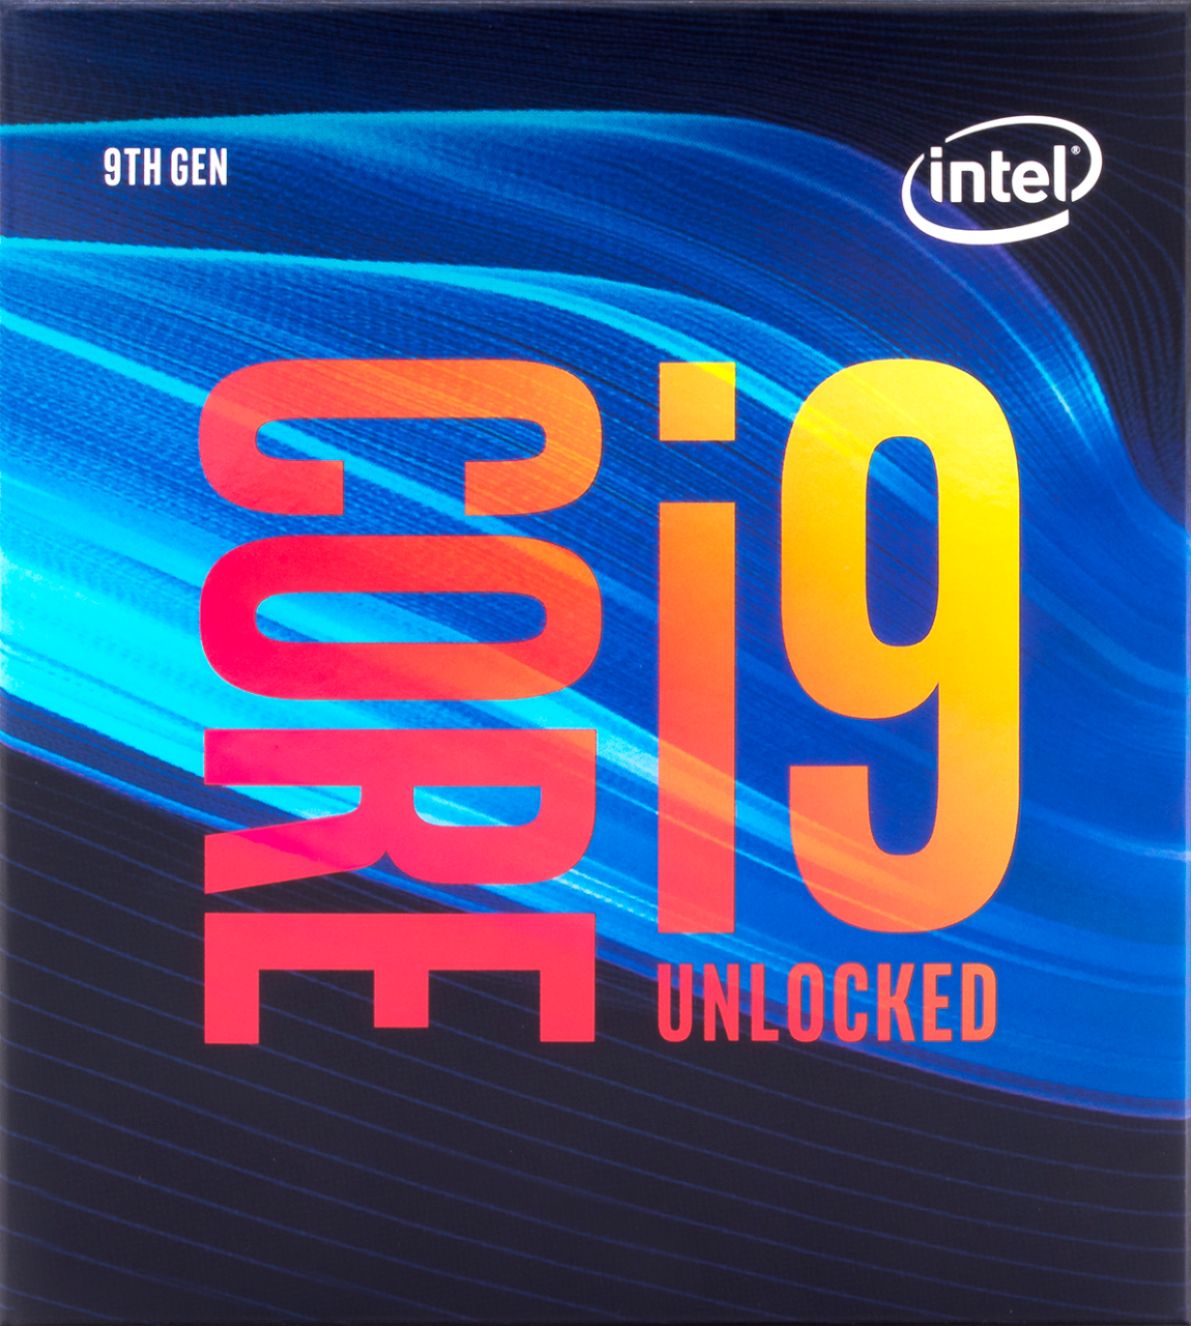 hoogte Luxe suspensie Intel Core i9-9900K 9th Generation 8-Core 16-Thread 3.6 GHz (5.0 GHz Turbo)  Socket LGA 1151 Unlocked Desktop Processor BX80684I99900K - Best Buy